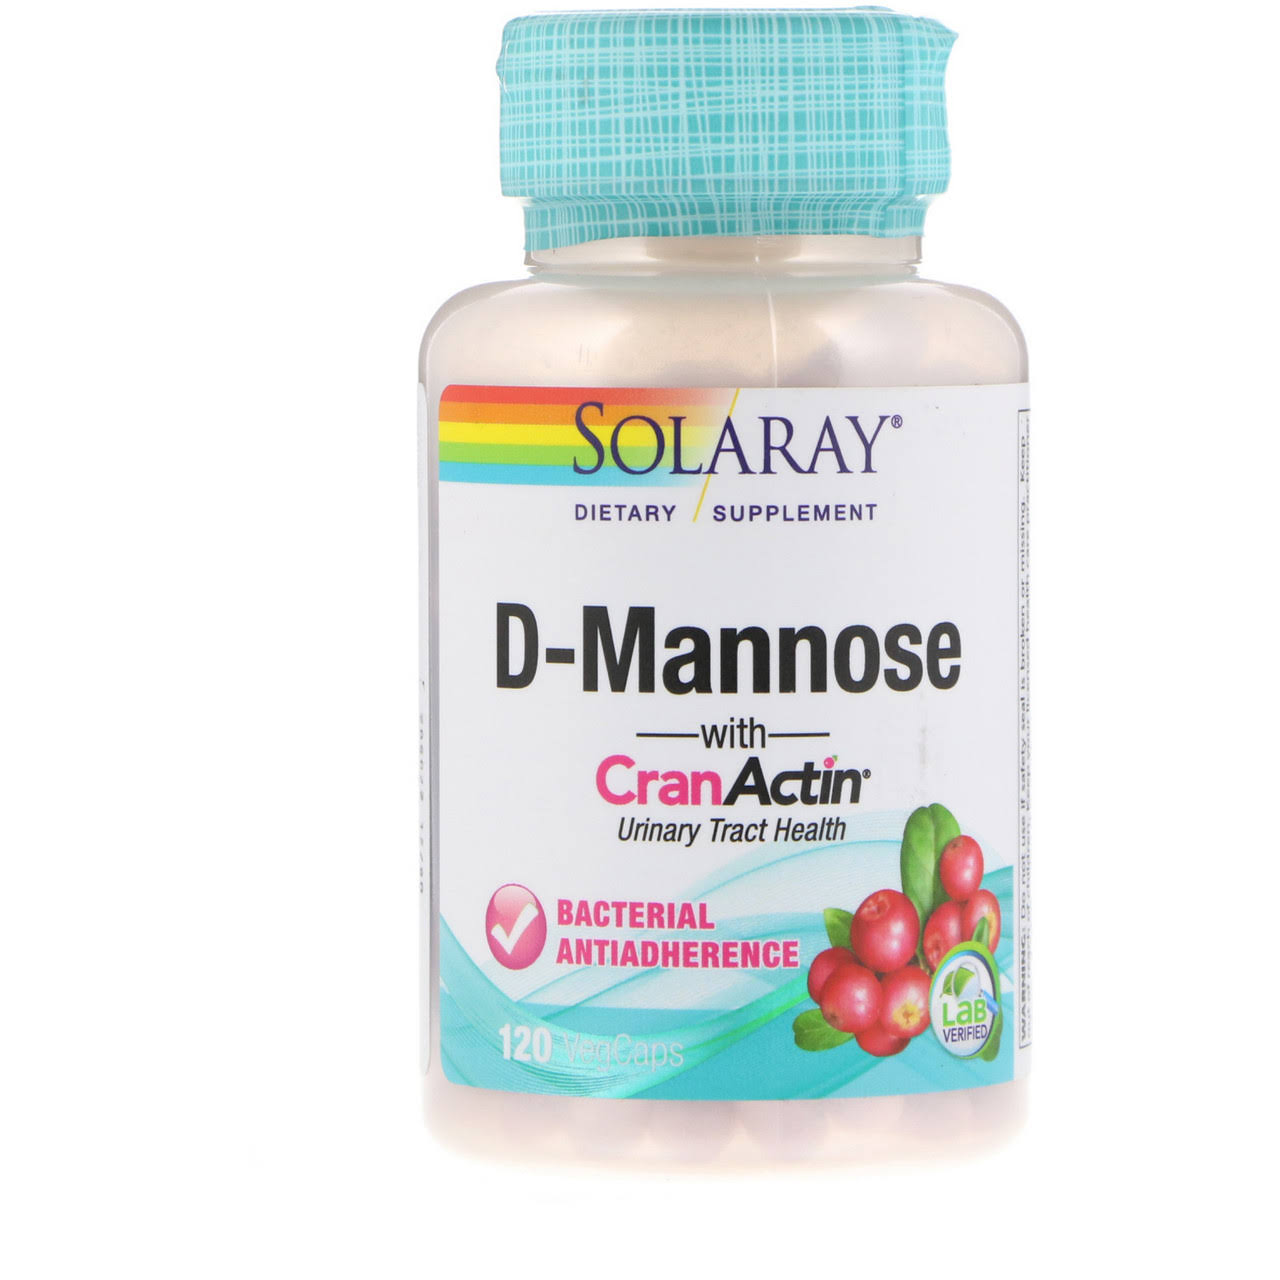 Solaray D-Mannose with Cranactin Supplement - 120 Vegetarian Capsules